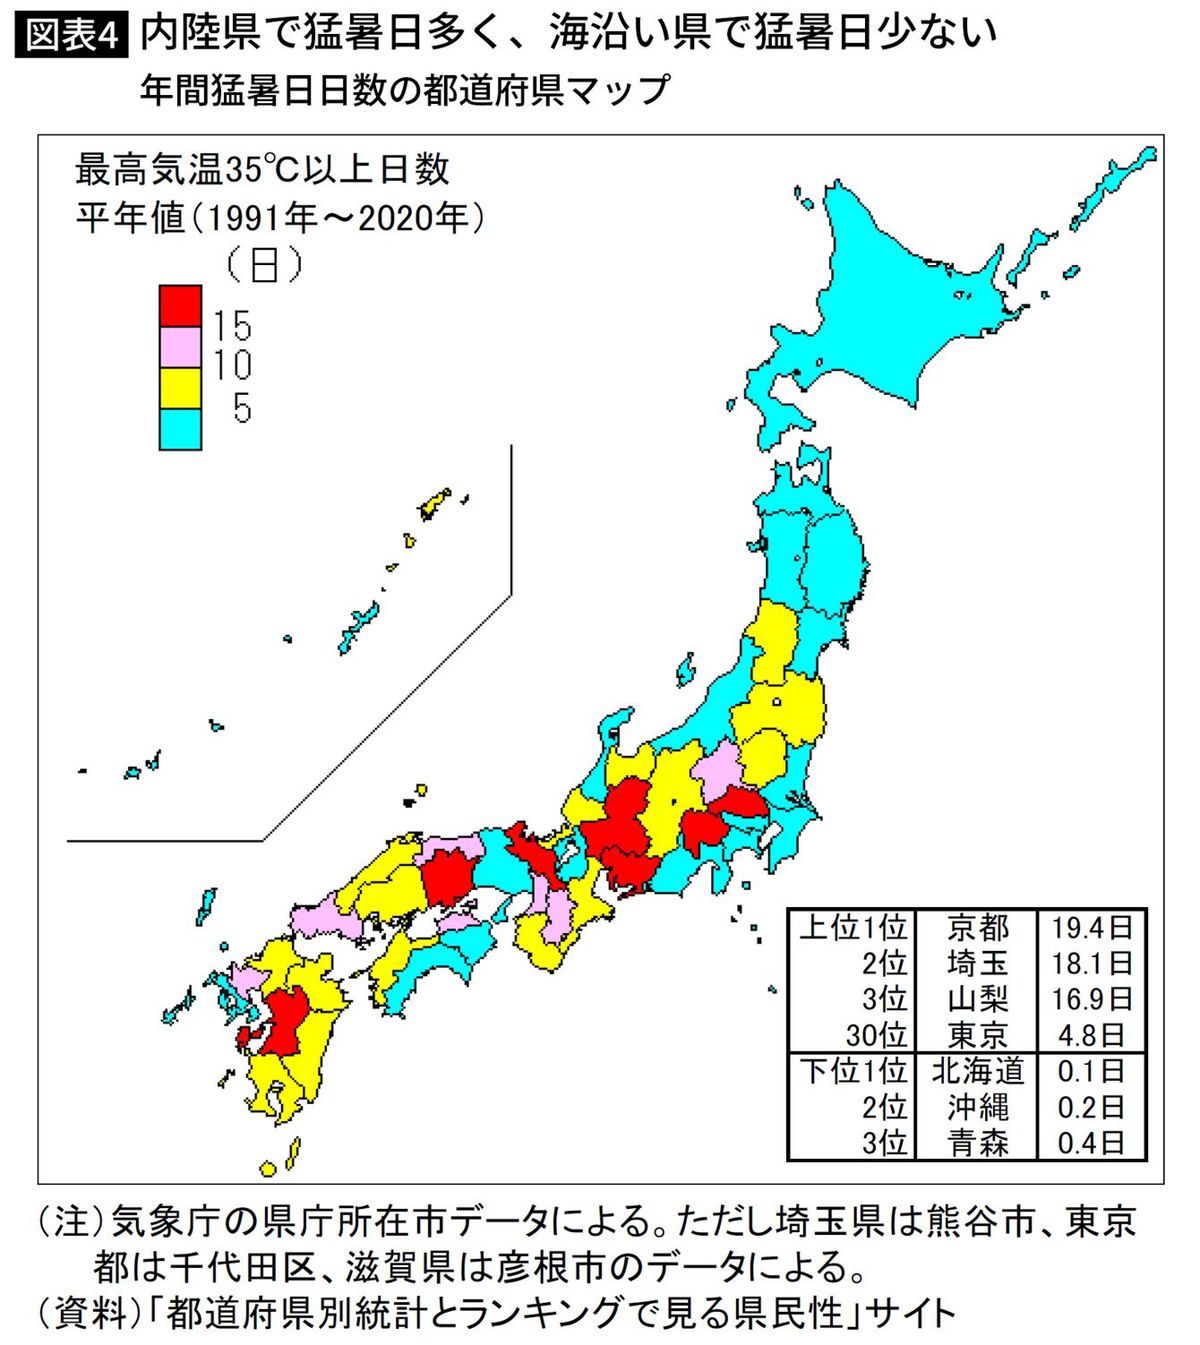 年間猛暑日日数の都道府県マップ